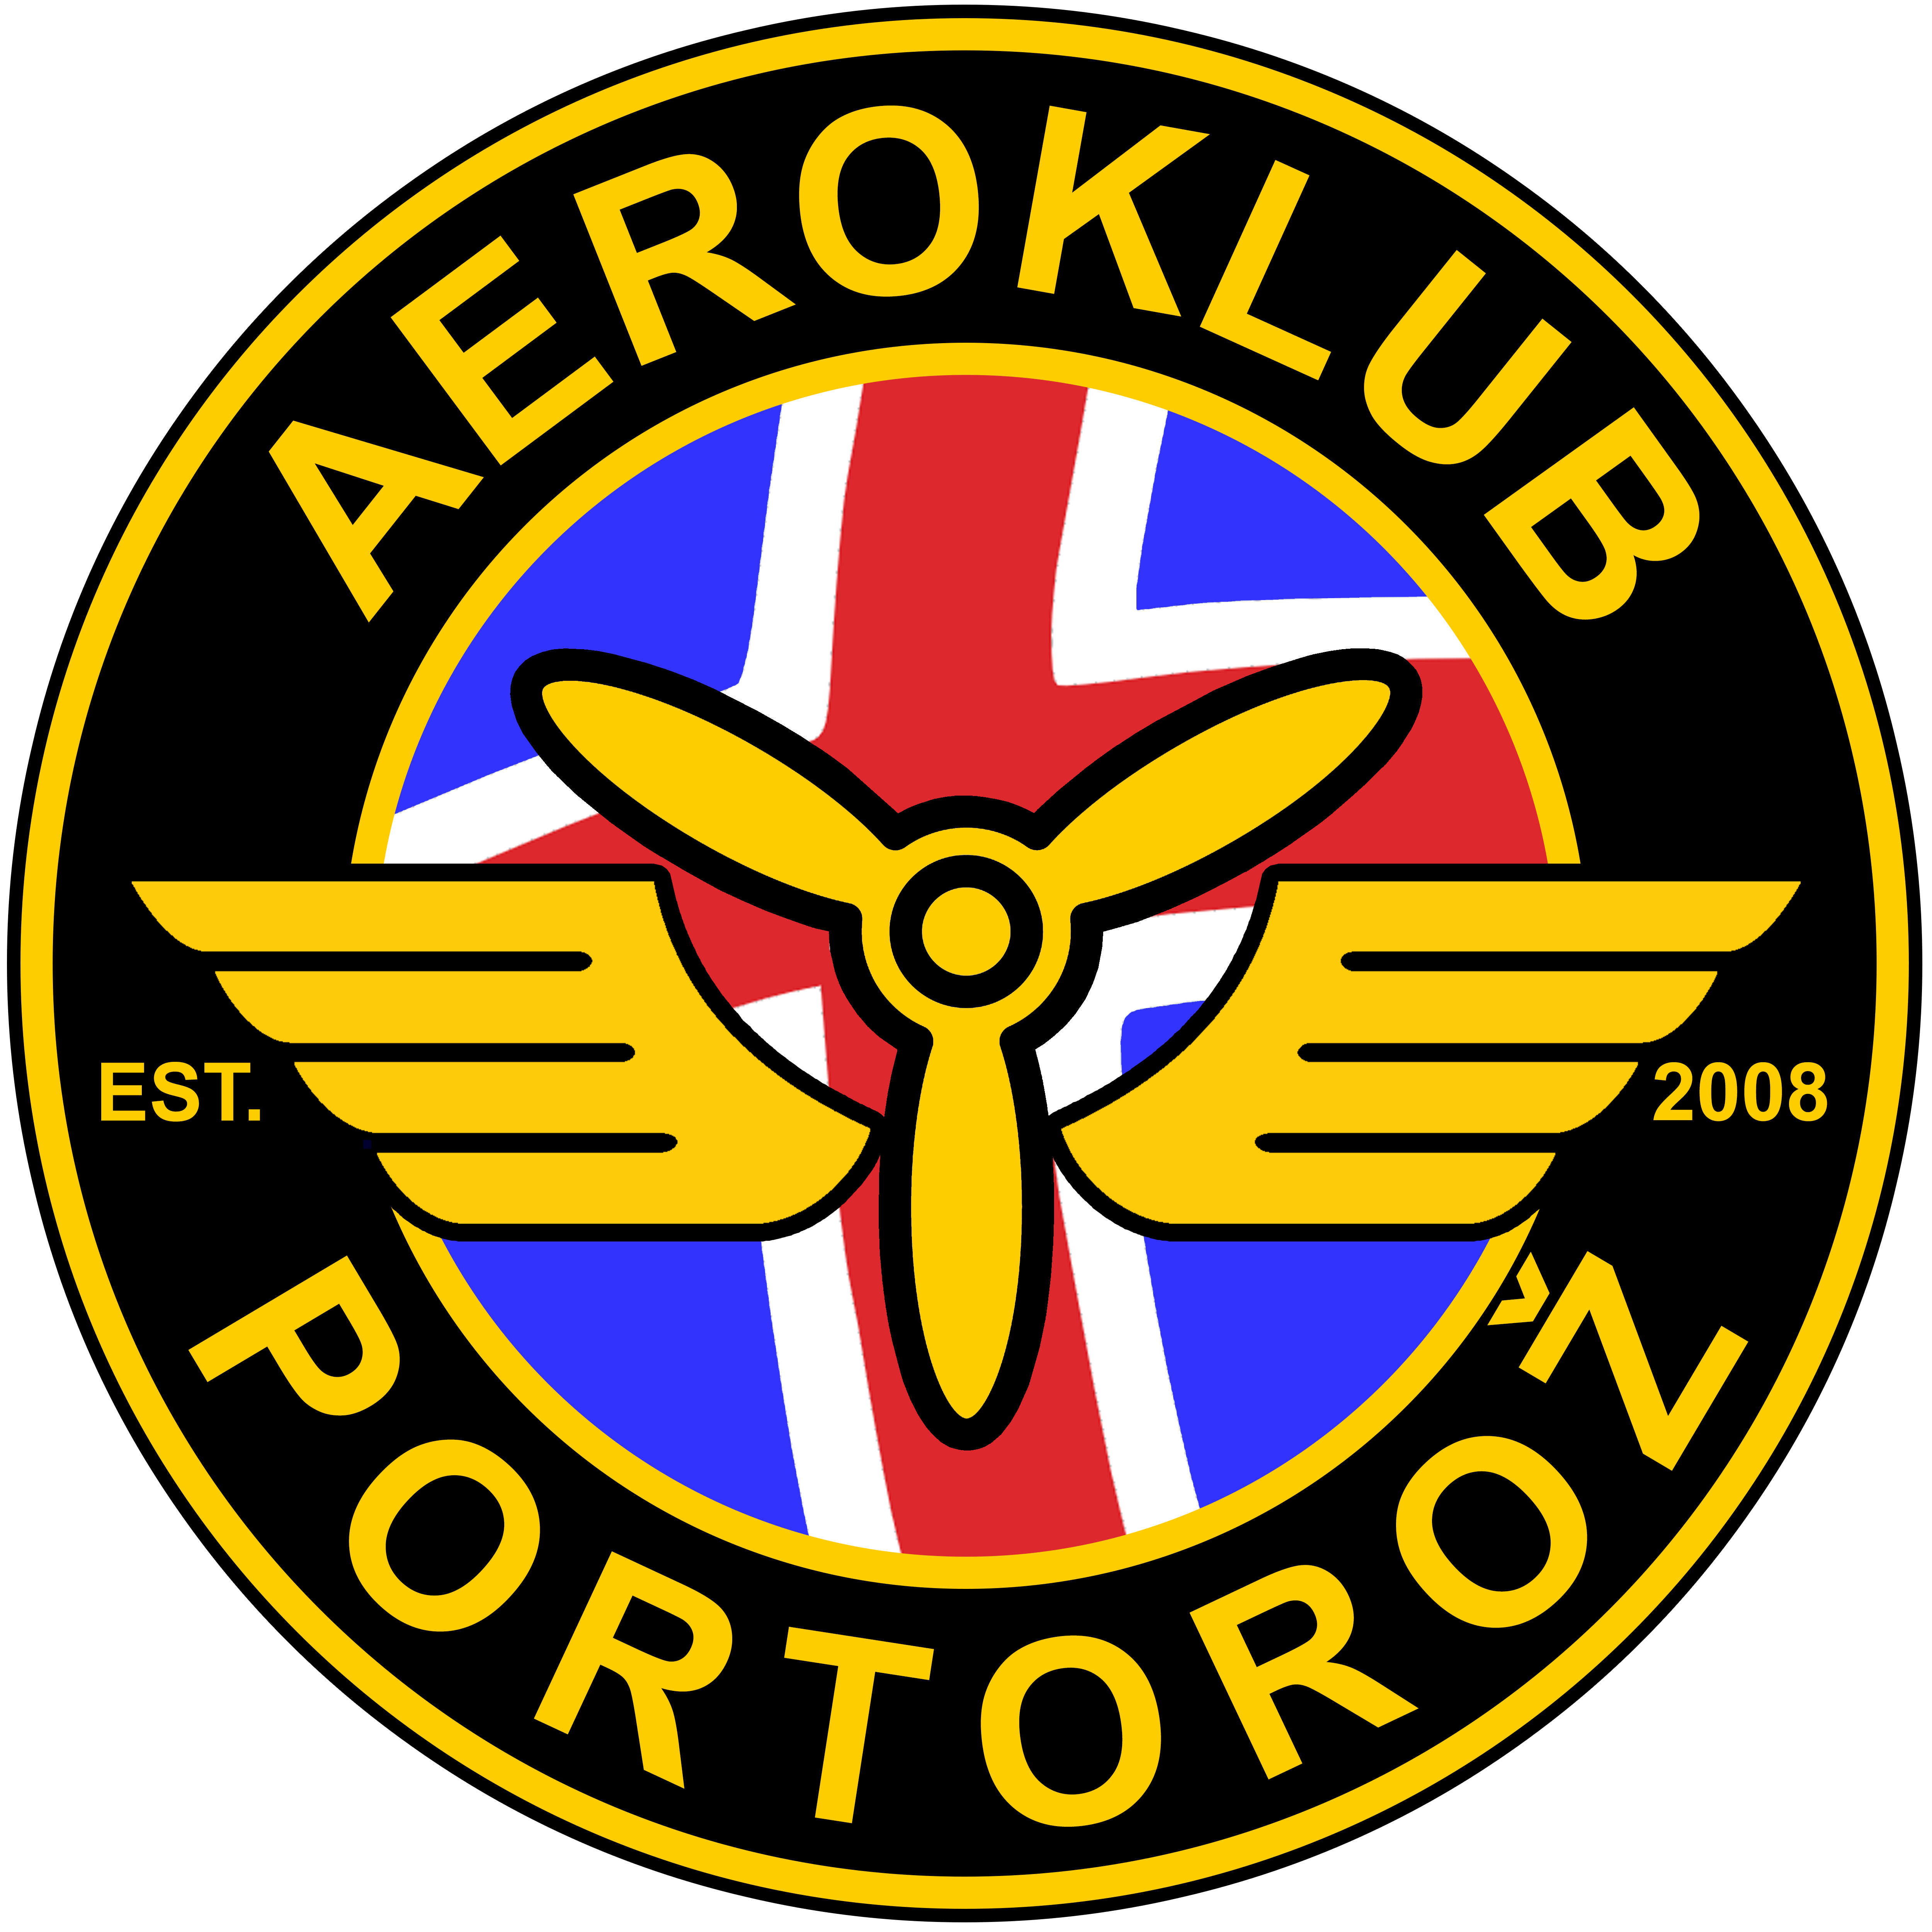 Aeroklub Portorož